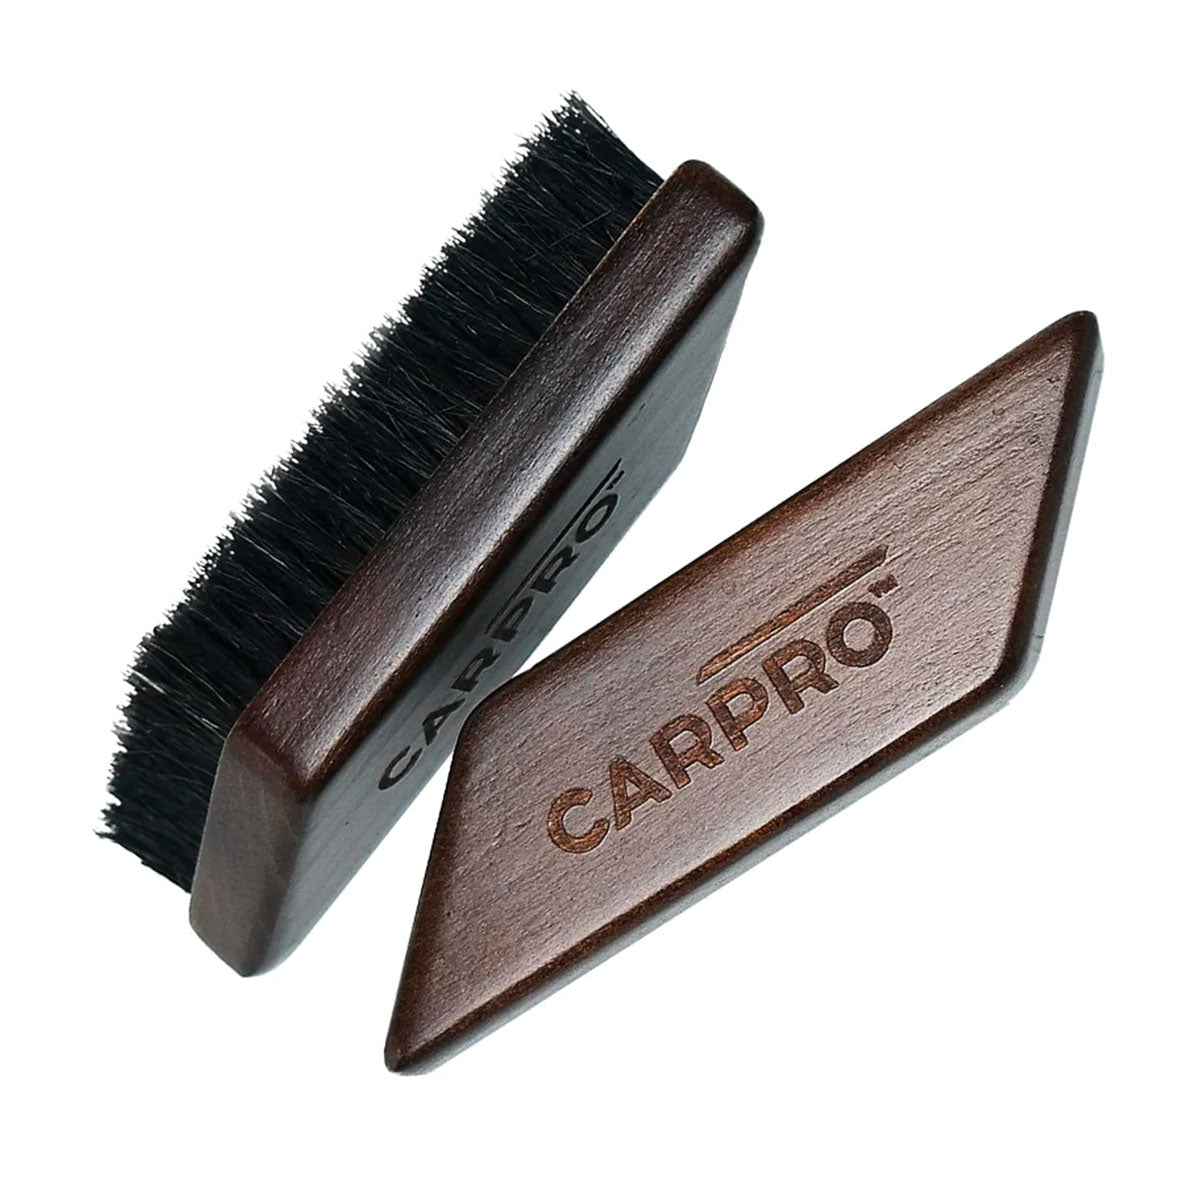 CarPro Leather and Fabric Brush – Solo Dettagli di Carlo Raimondi